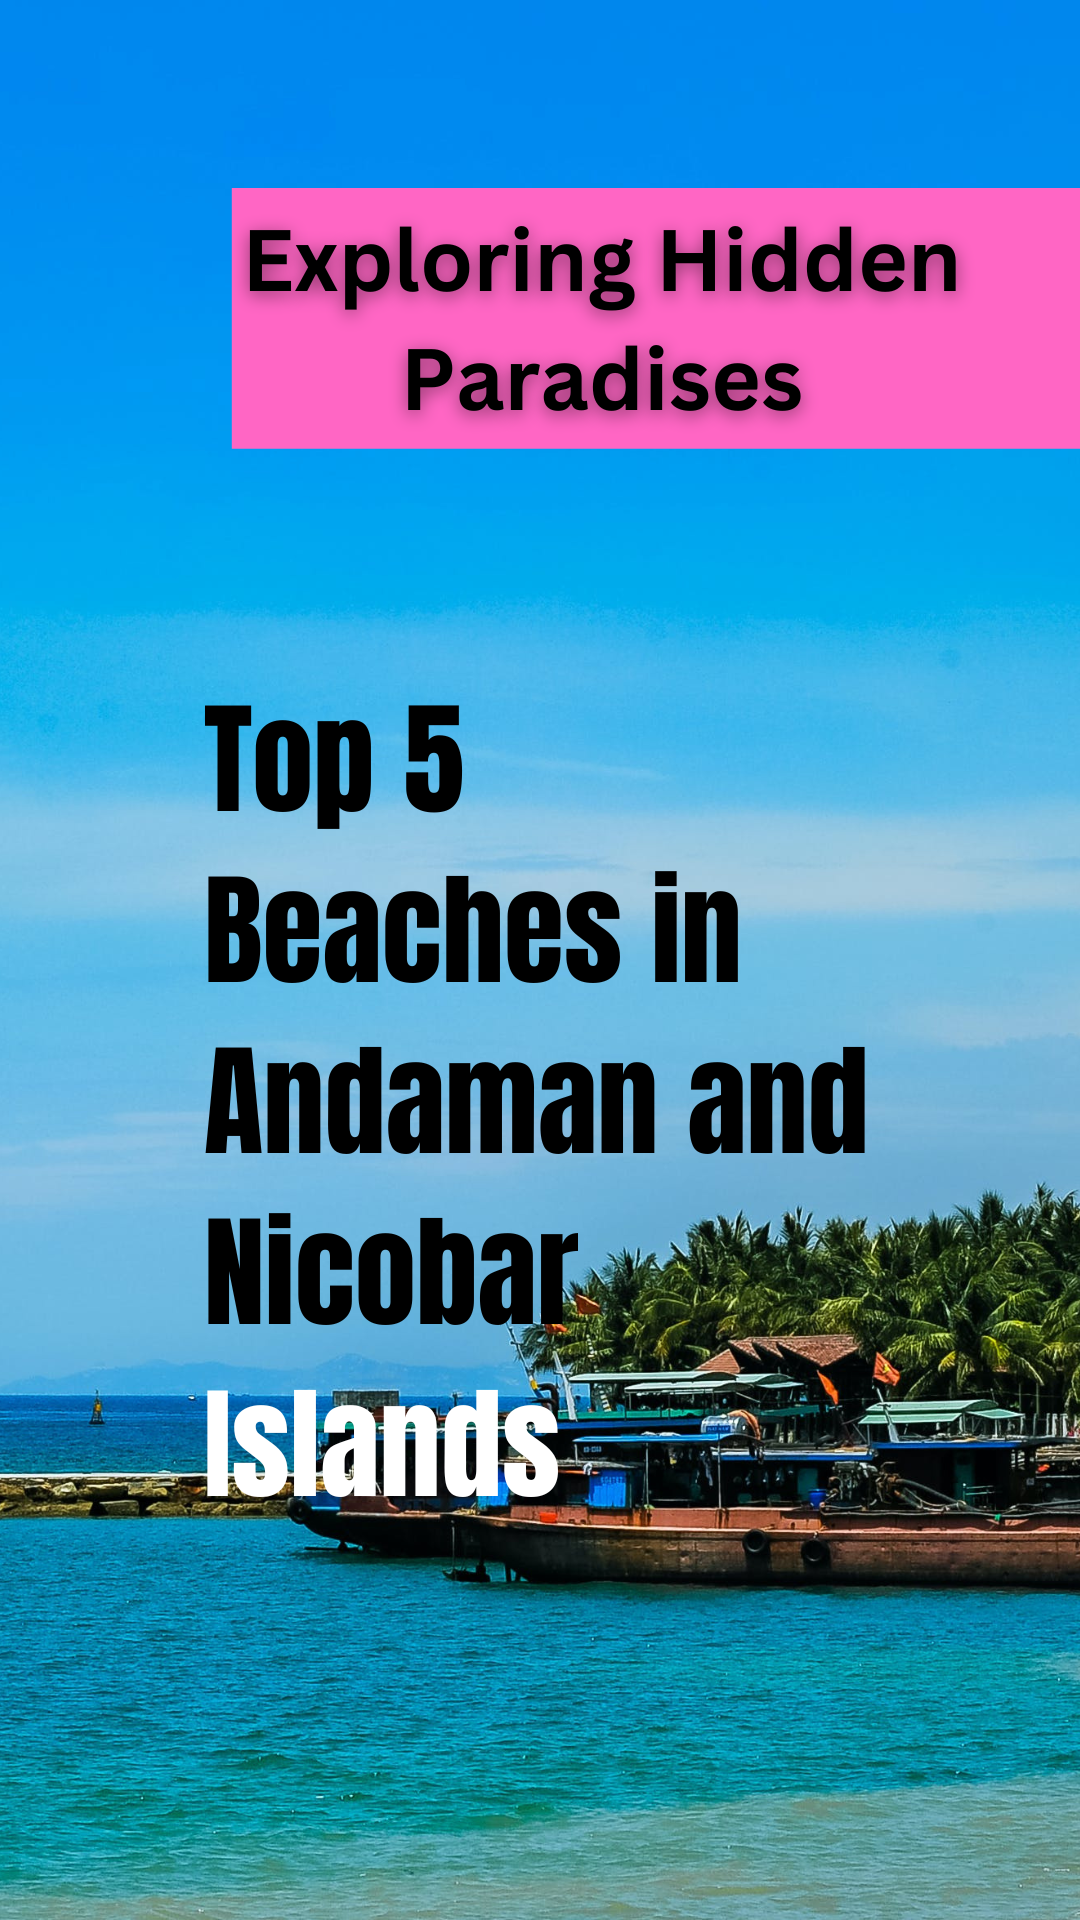 Top 5 Beaches in Andaman and Nicobar Islands : Exploring Hidden Paradises